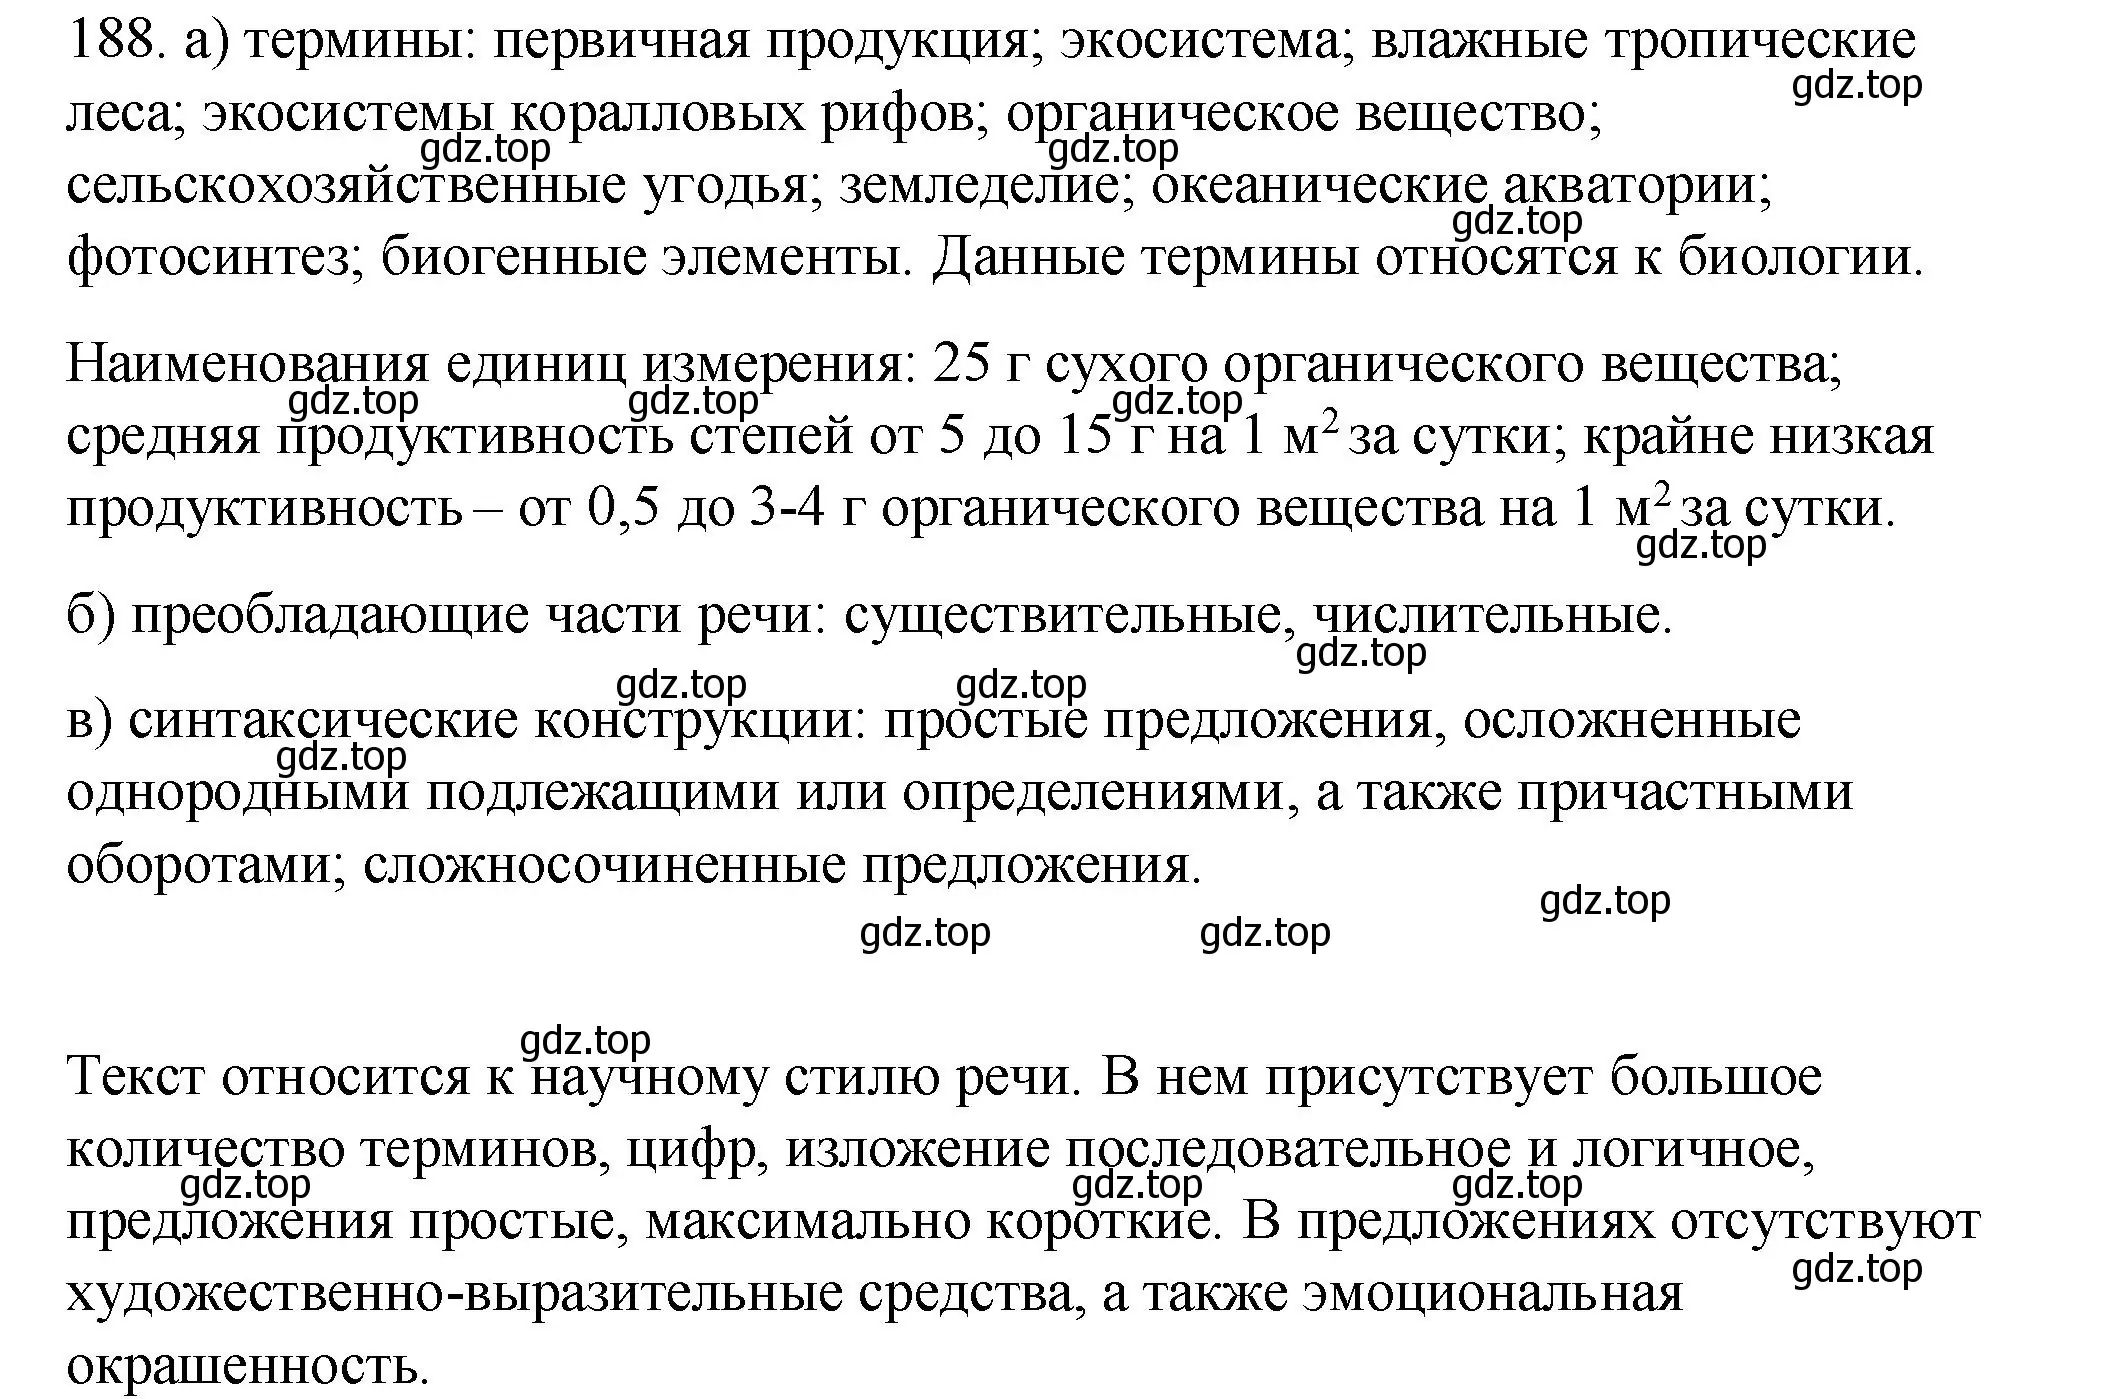 Решение номер 188 (страница 268) гдз по русскому языку 10-11 класс Гольцова, Шамшин, учебник 2 часть